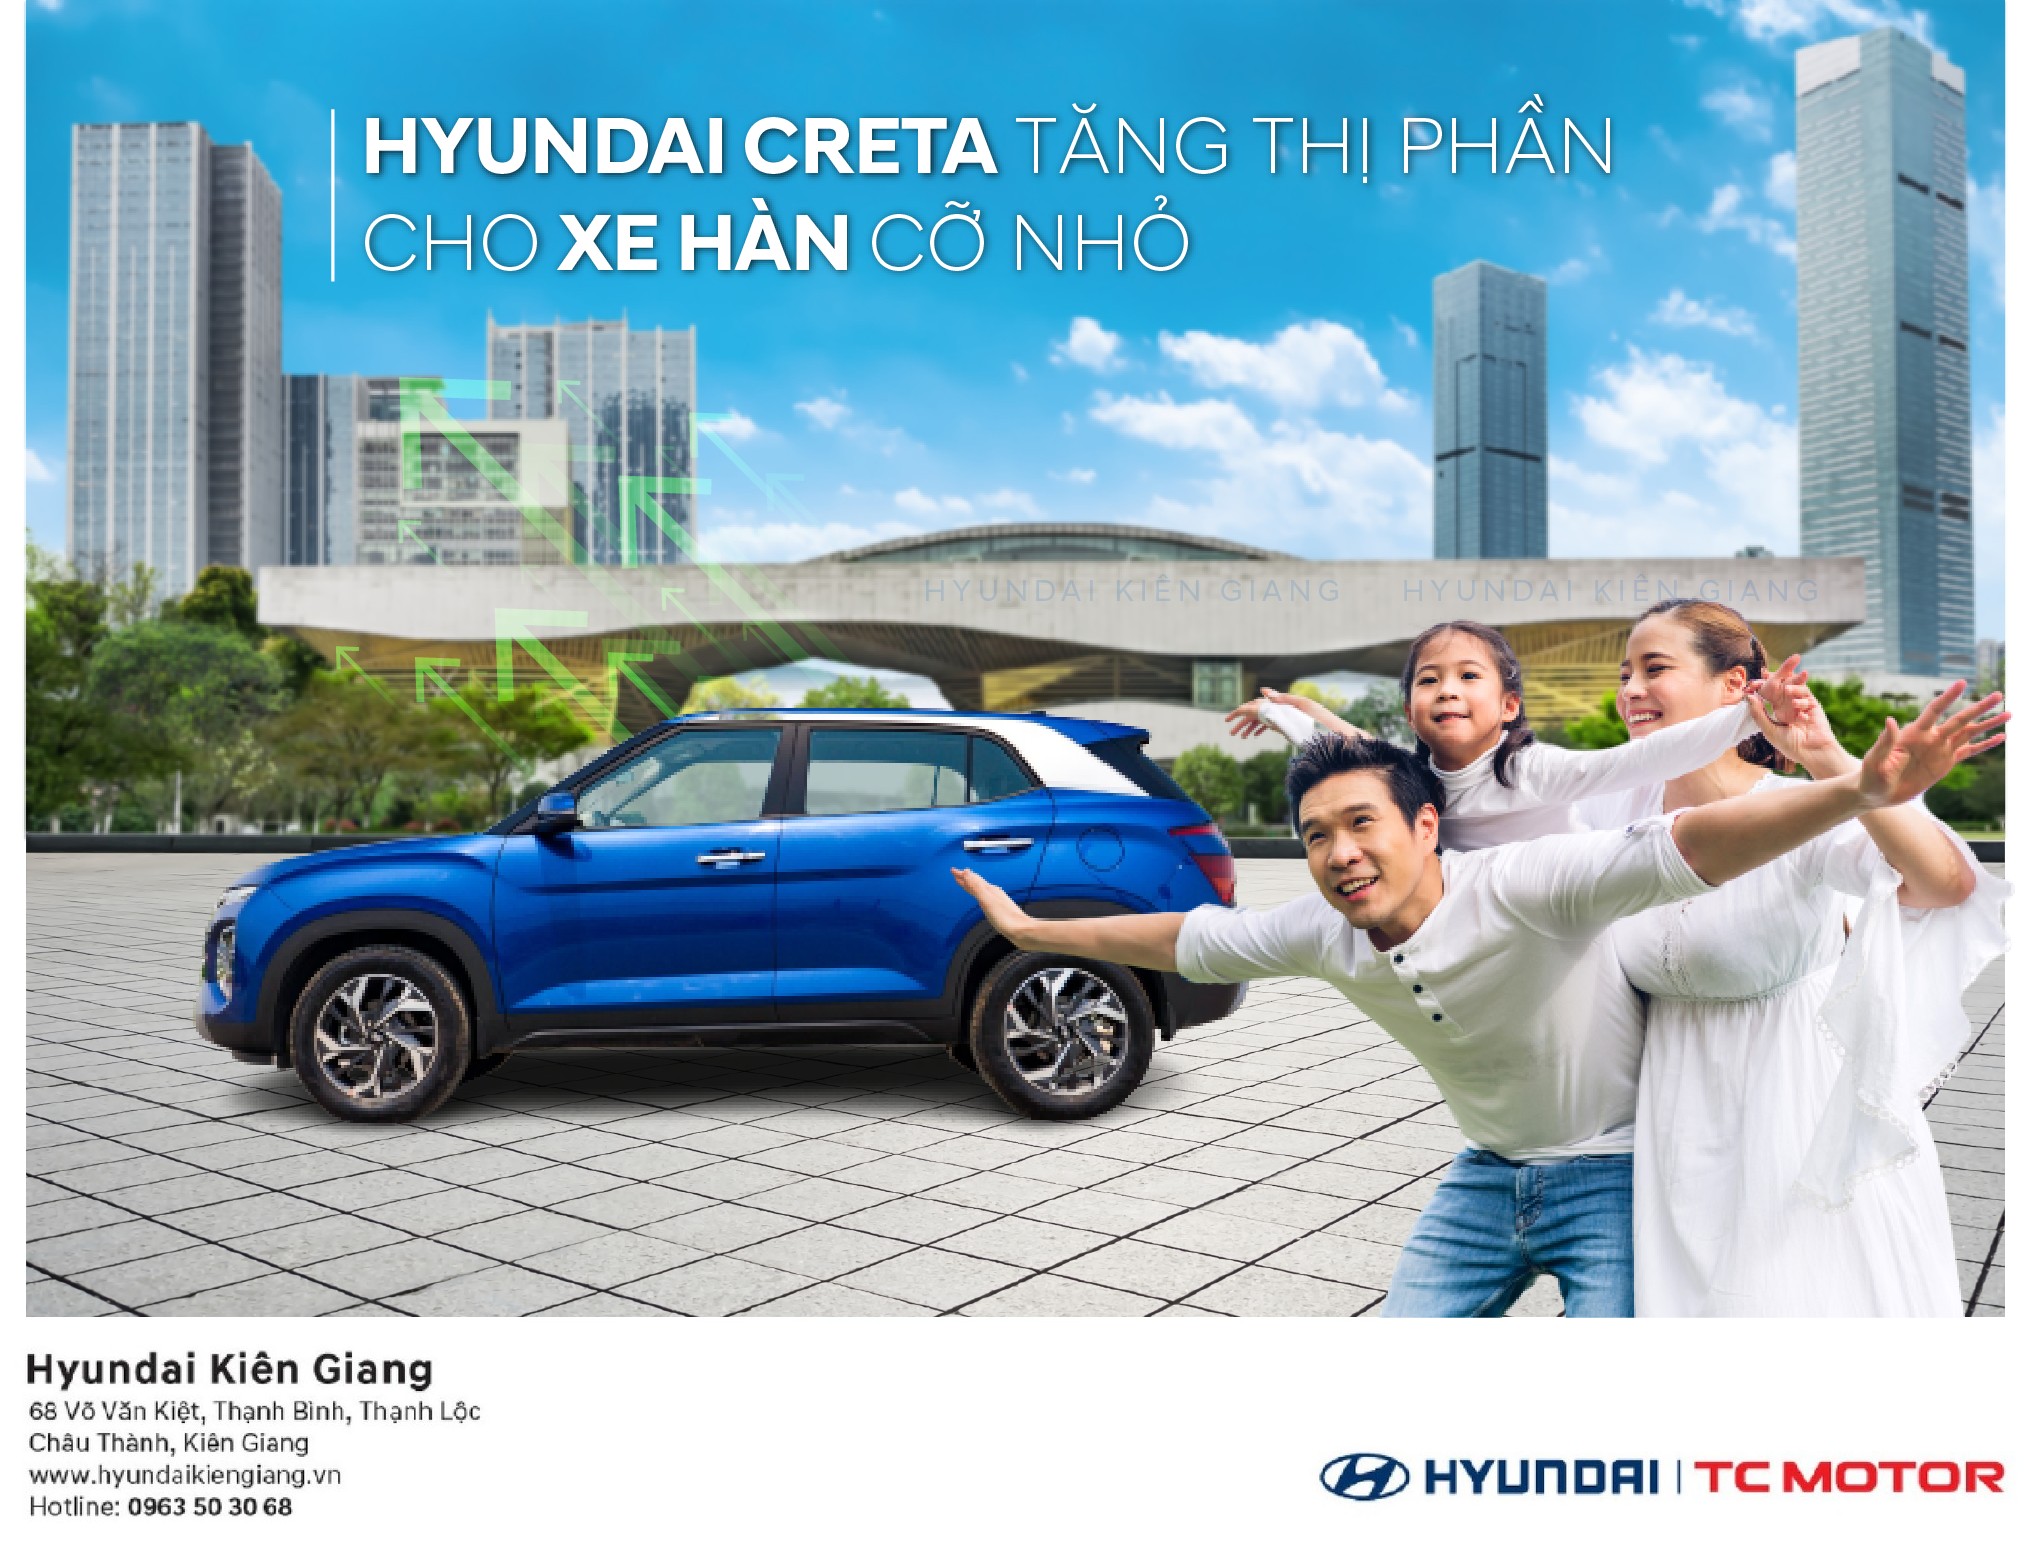 Hyundai Creta tăng thị phần cho xe cỡ nhỏ